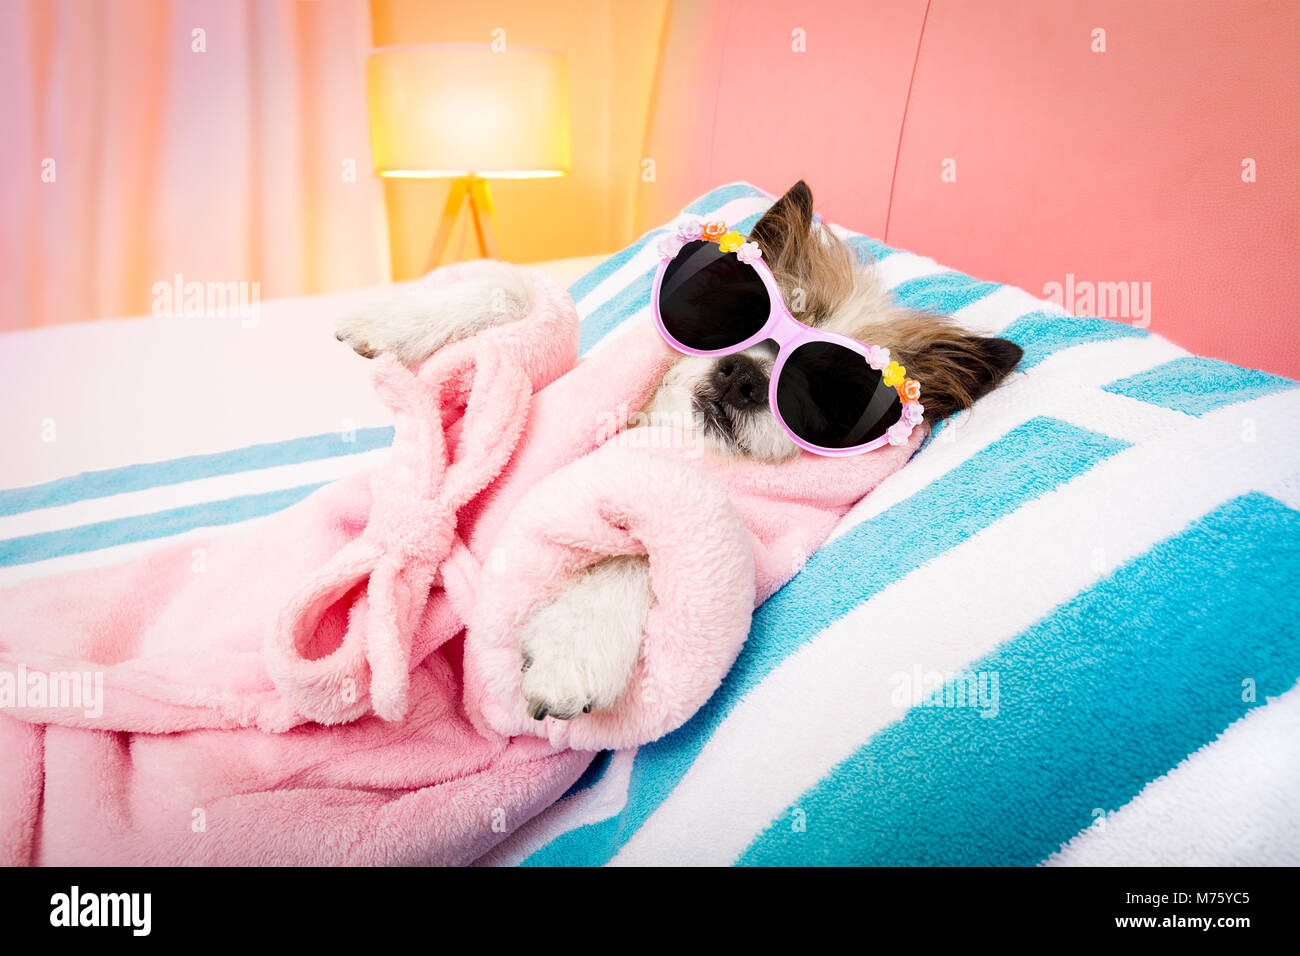 Cool lustig Pudel hund Ausruhen und Entspannen im Spa Wellness Salon  center, Bademantel und ausgefallene Sonnenbrille Stockfotografie - Alamy